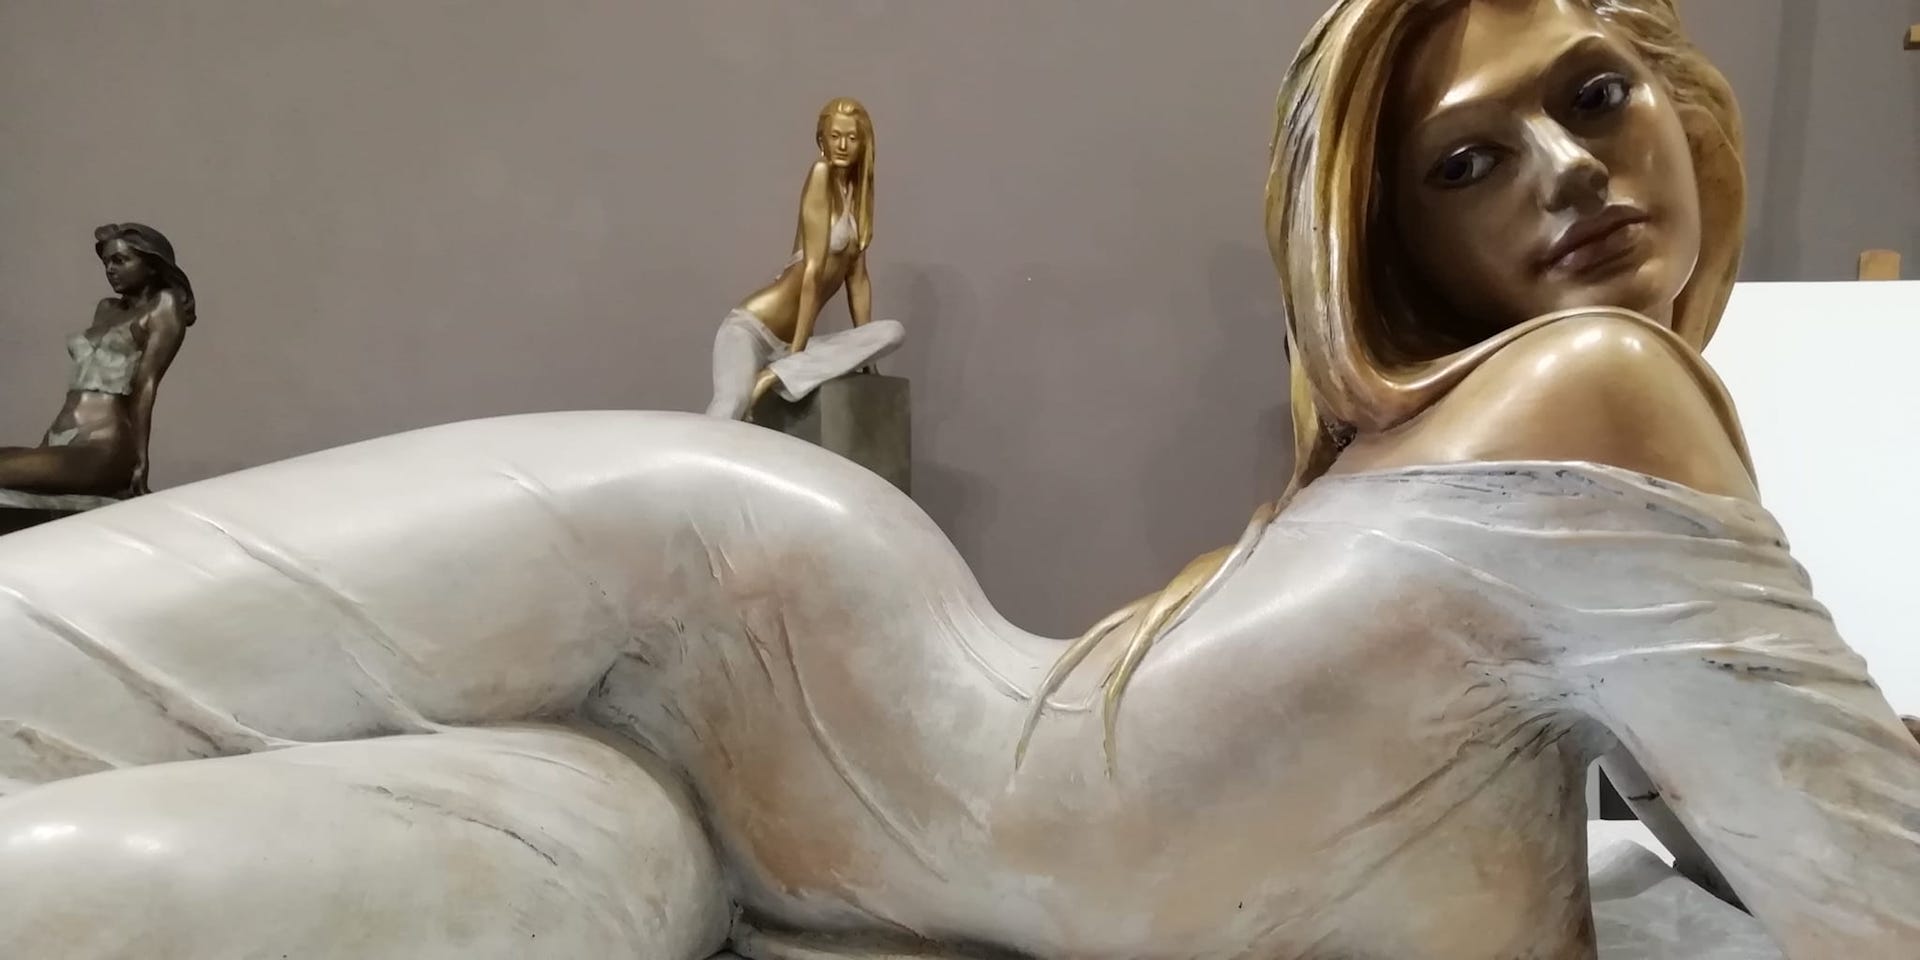 Sculture-bronzo-statue-donne-nudi-femminili-artistici-Eva-velata-orizzontale-4